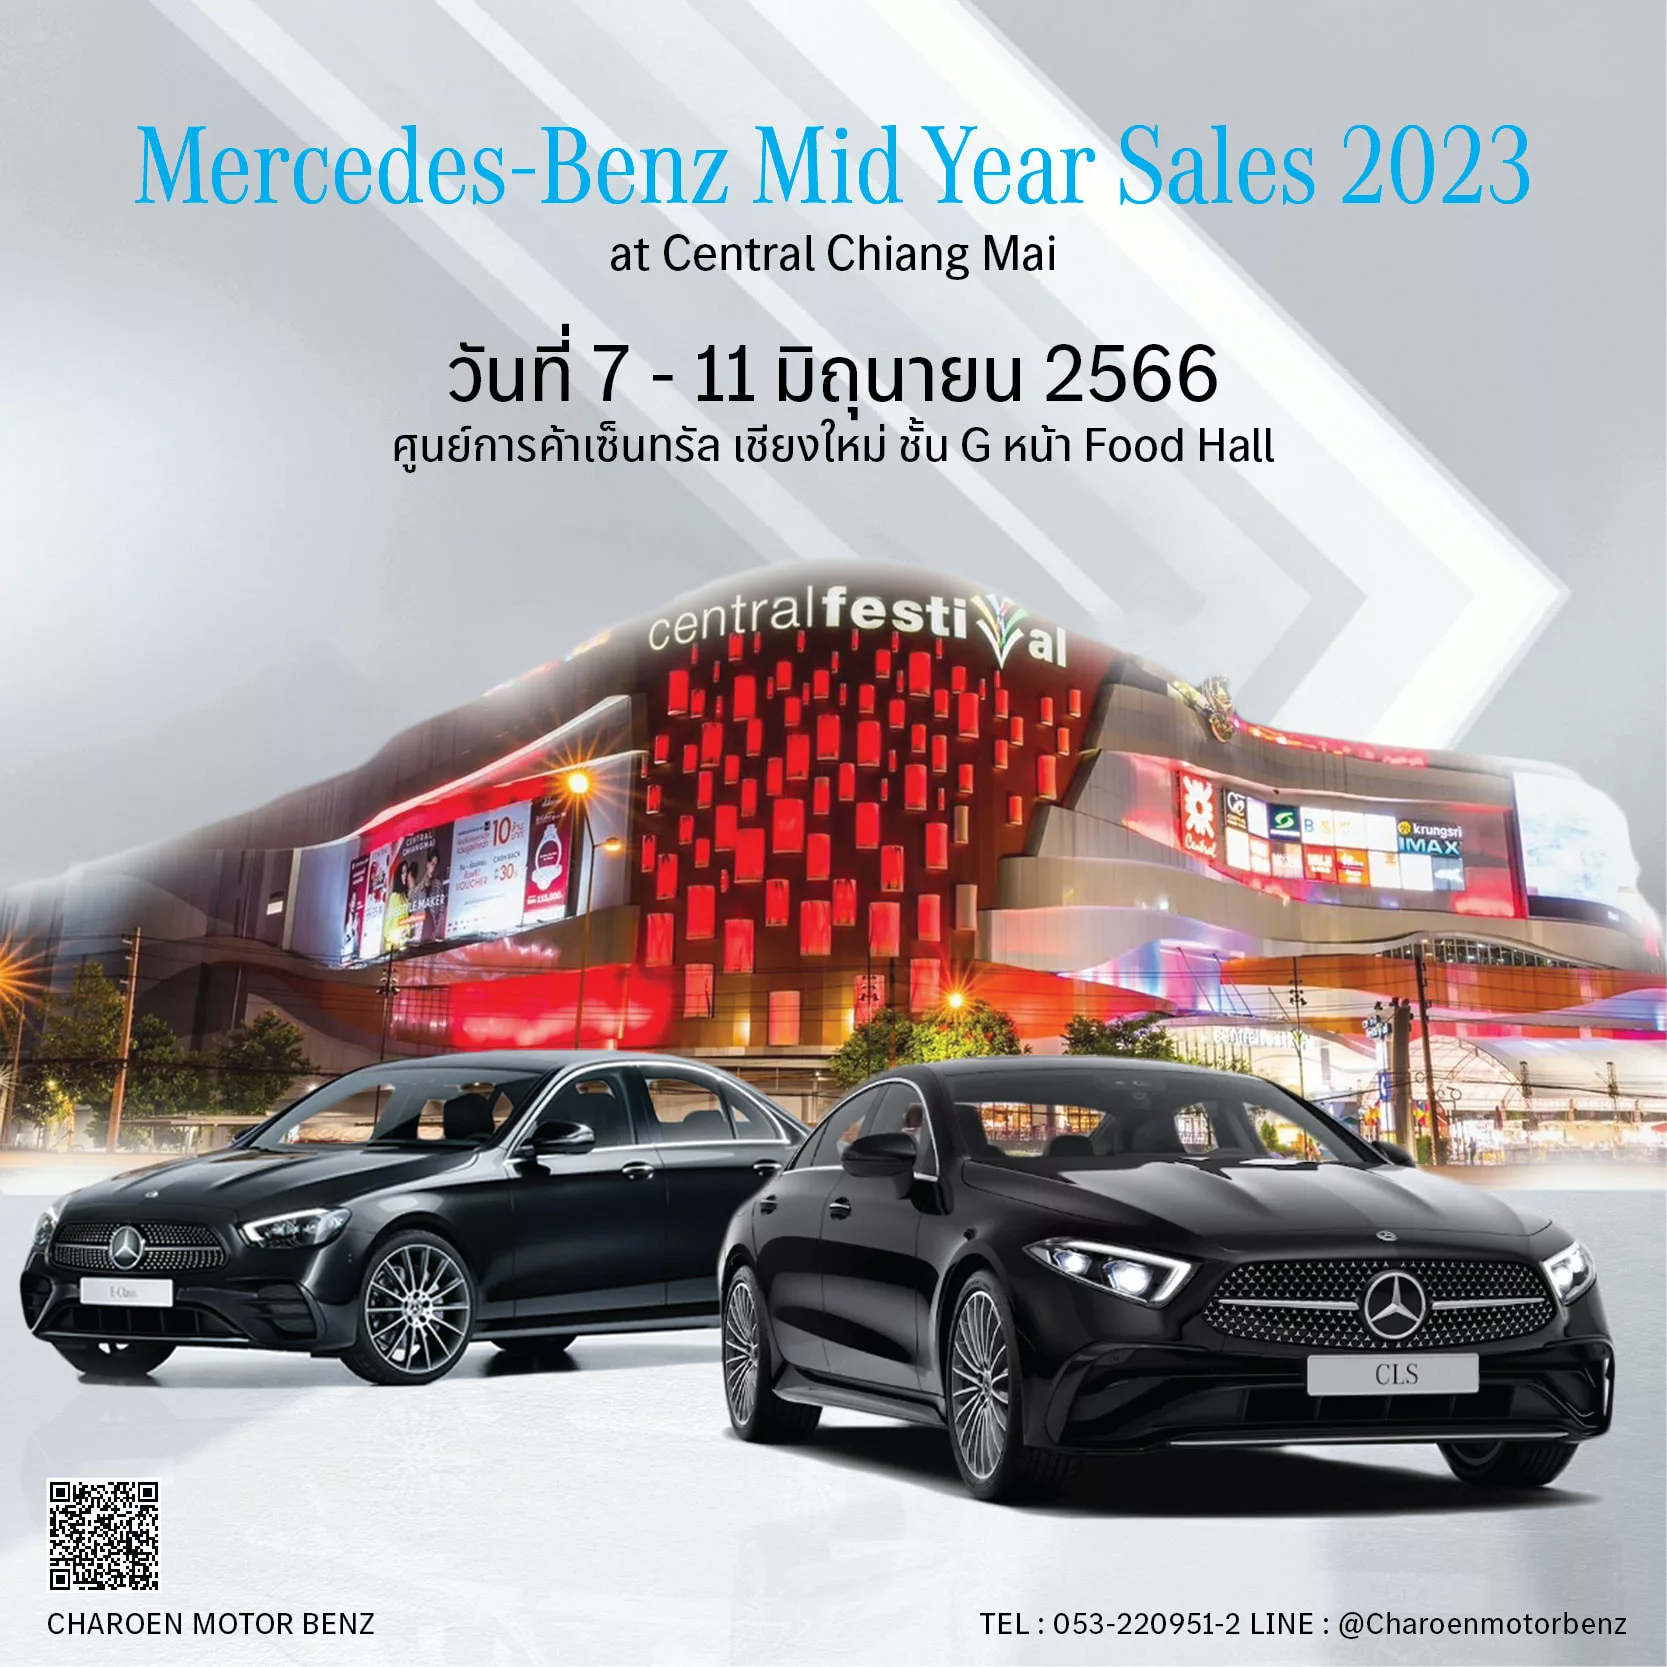 ครั้งแรกในภาคเหนือ เตรียมตัวพบกับงาน Mercedes-Benz Mid Year Sales 2023 at Central Chiangmai ที่ยกทัพรถยนต์ Mercedes-Benz พร้อมให้คุณได้สัมผัสประสบการณ์ใหม่เเละรับข้อเสนอสุดว้าว